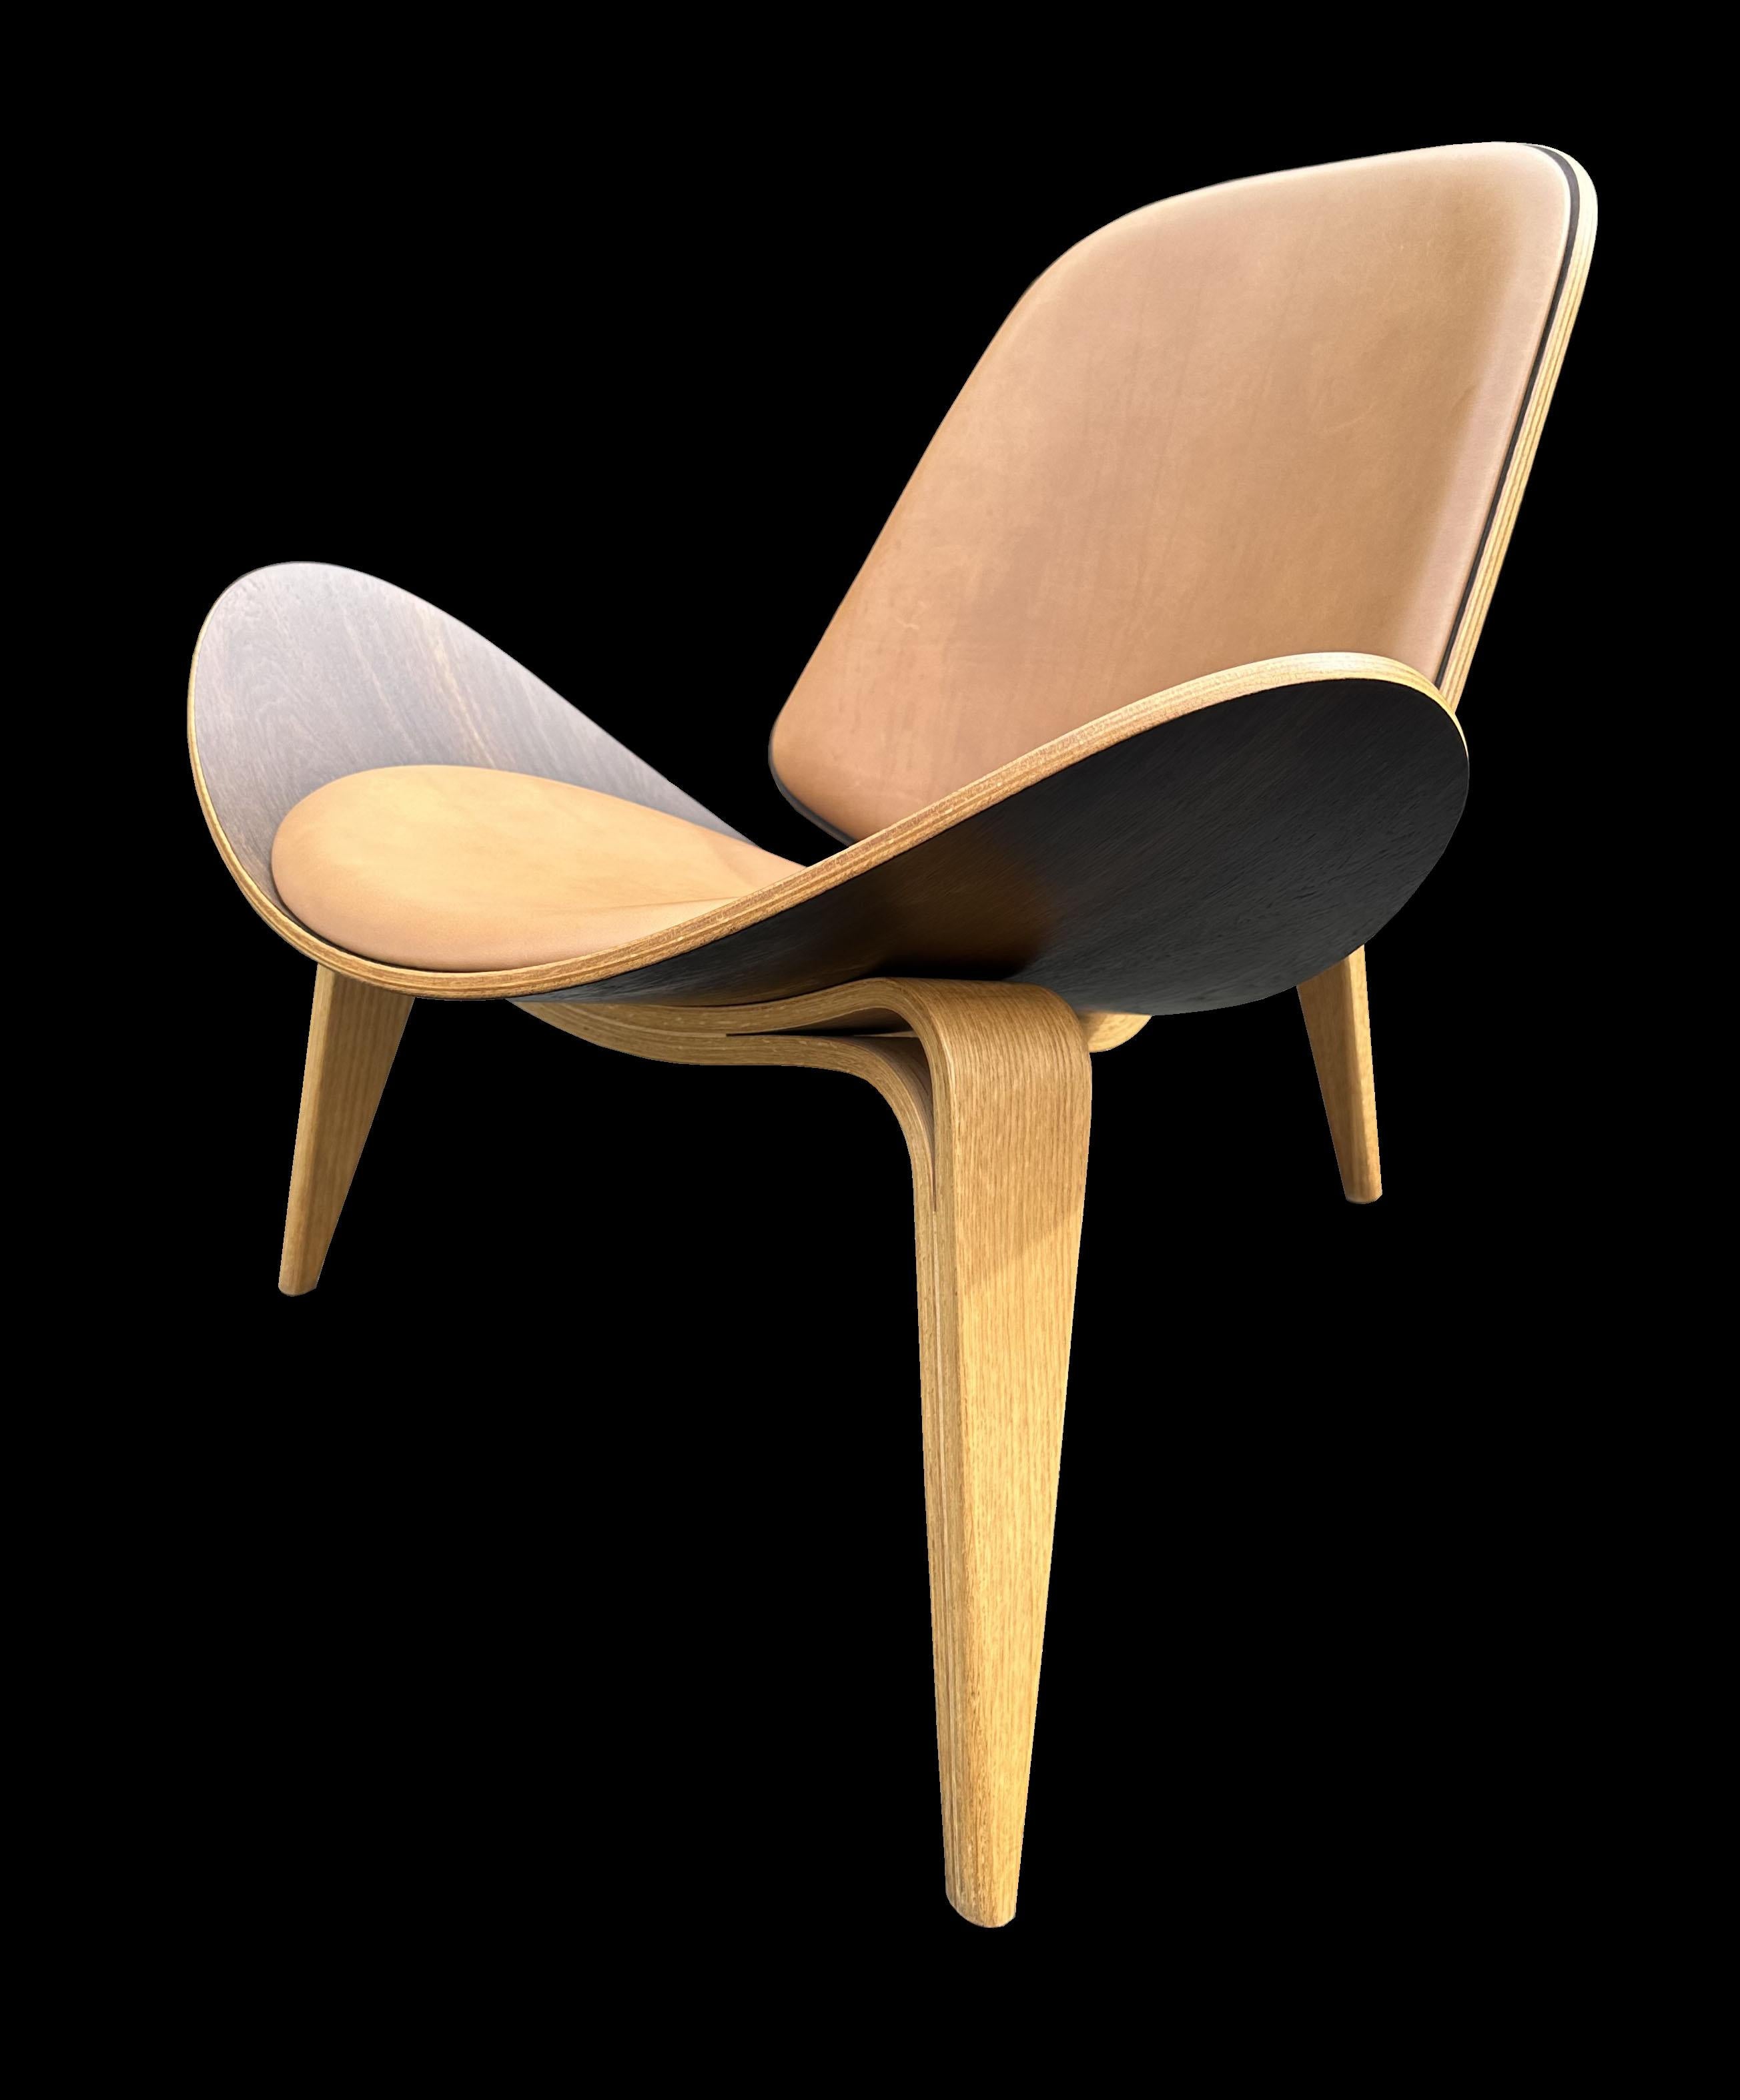 Lorsque Hans J. Wegner a conçu cette chaise en 1963, elle était un peu trop radicale pour le public et n'a été vendue qu'en très petit nombre. C'est pourquoi, lorsque le monde a pris conscience du génie de cette chaise dans les années 1980 et au